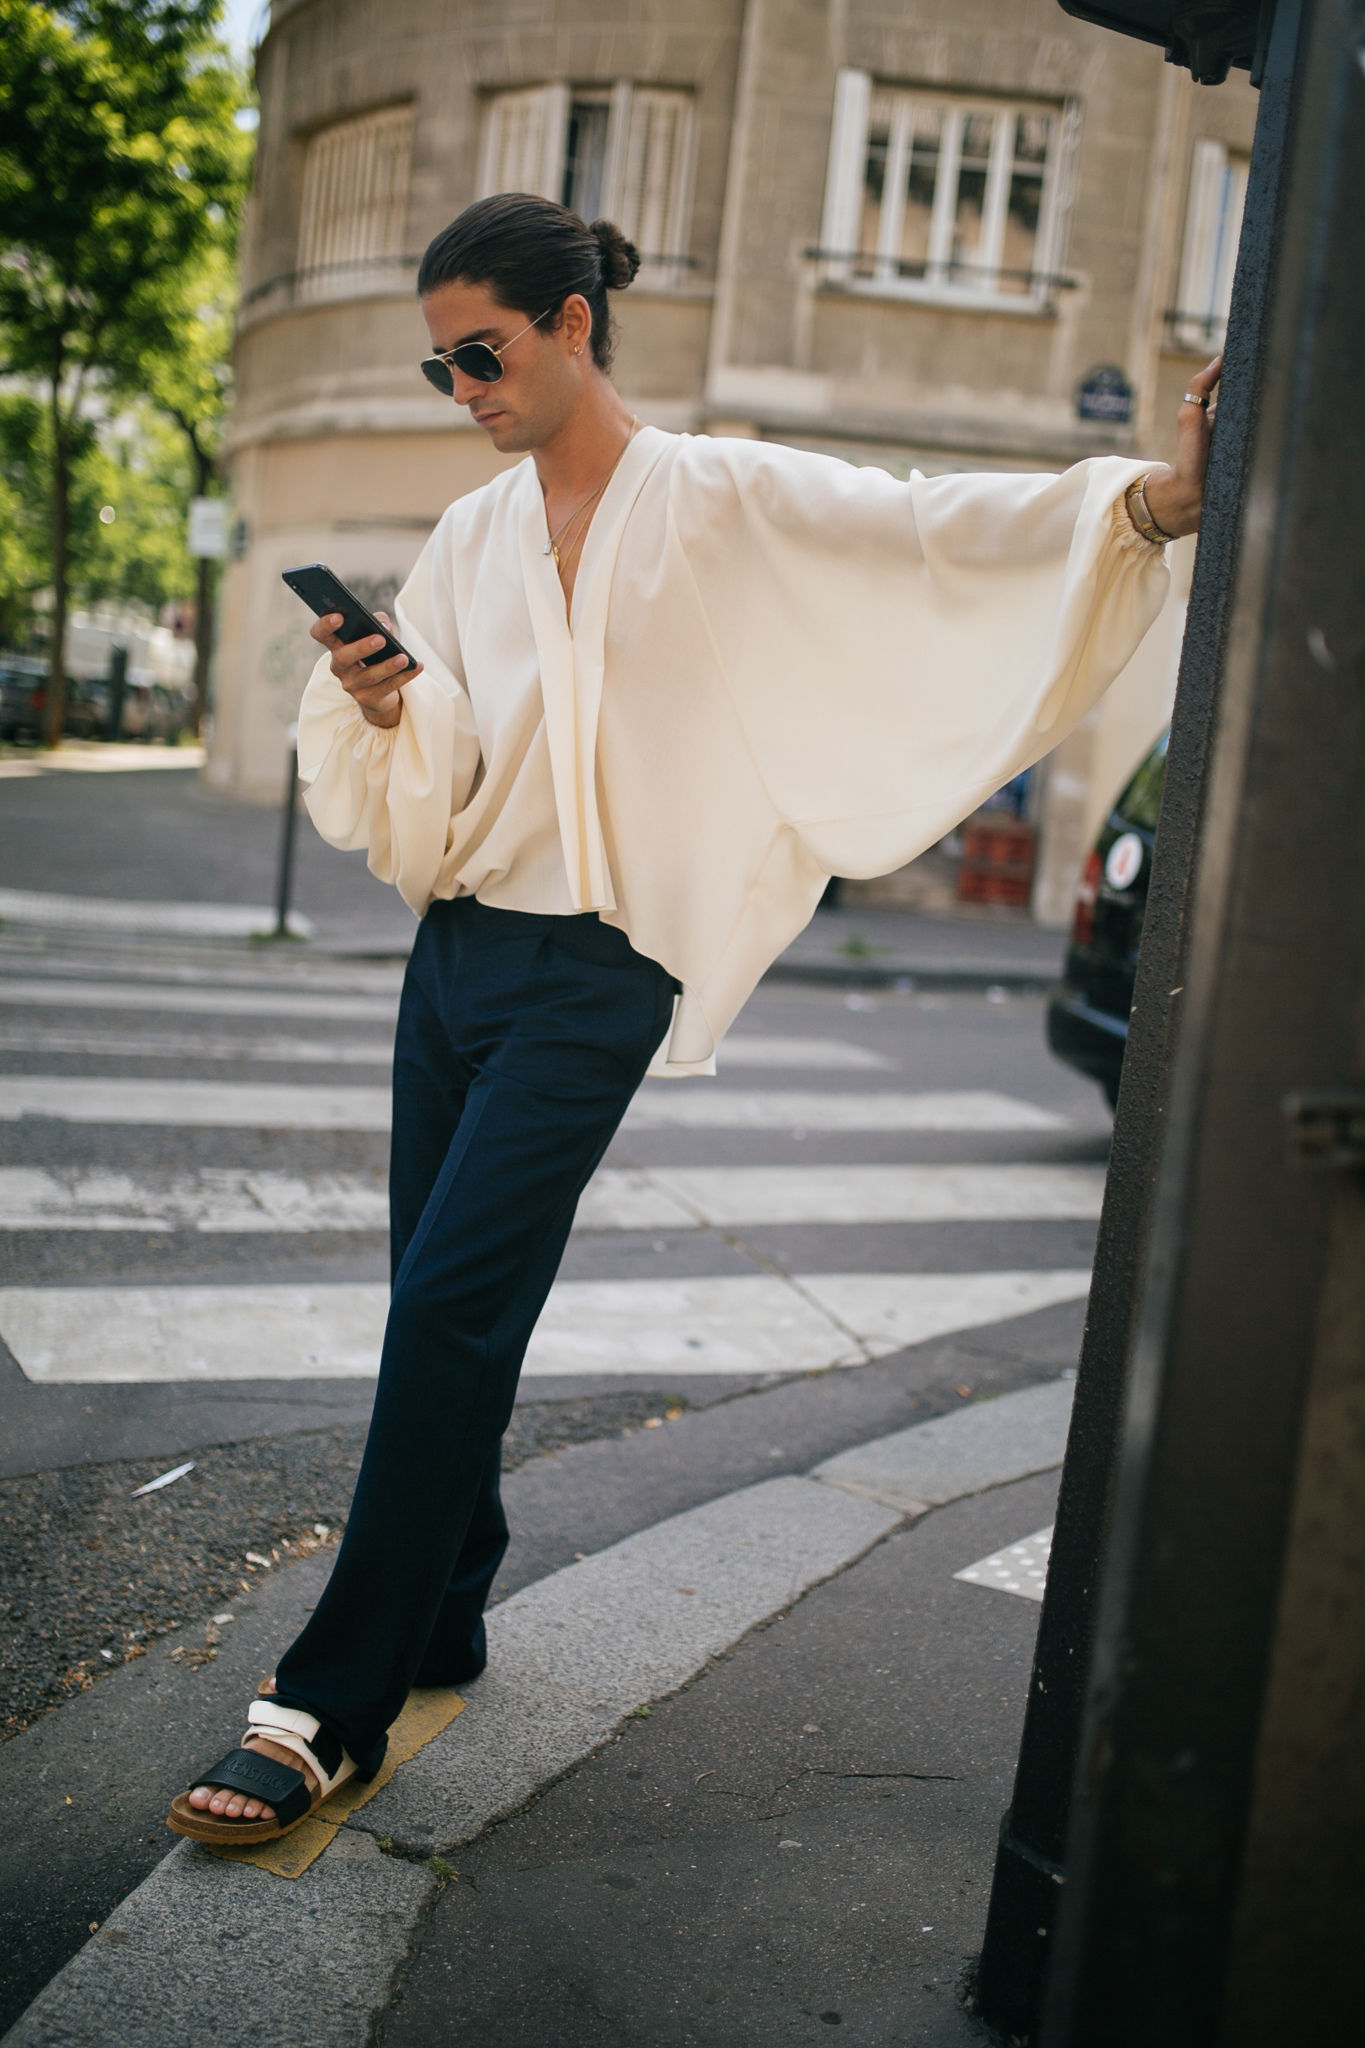 スナップ 吹き荒れるフォーマル旋風 迎え撃つパリのストリート 年春夏パリ メンズ ファッション ウイーク Wwdjapan Com